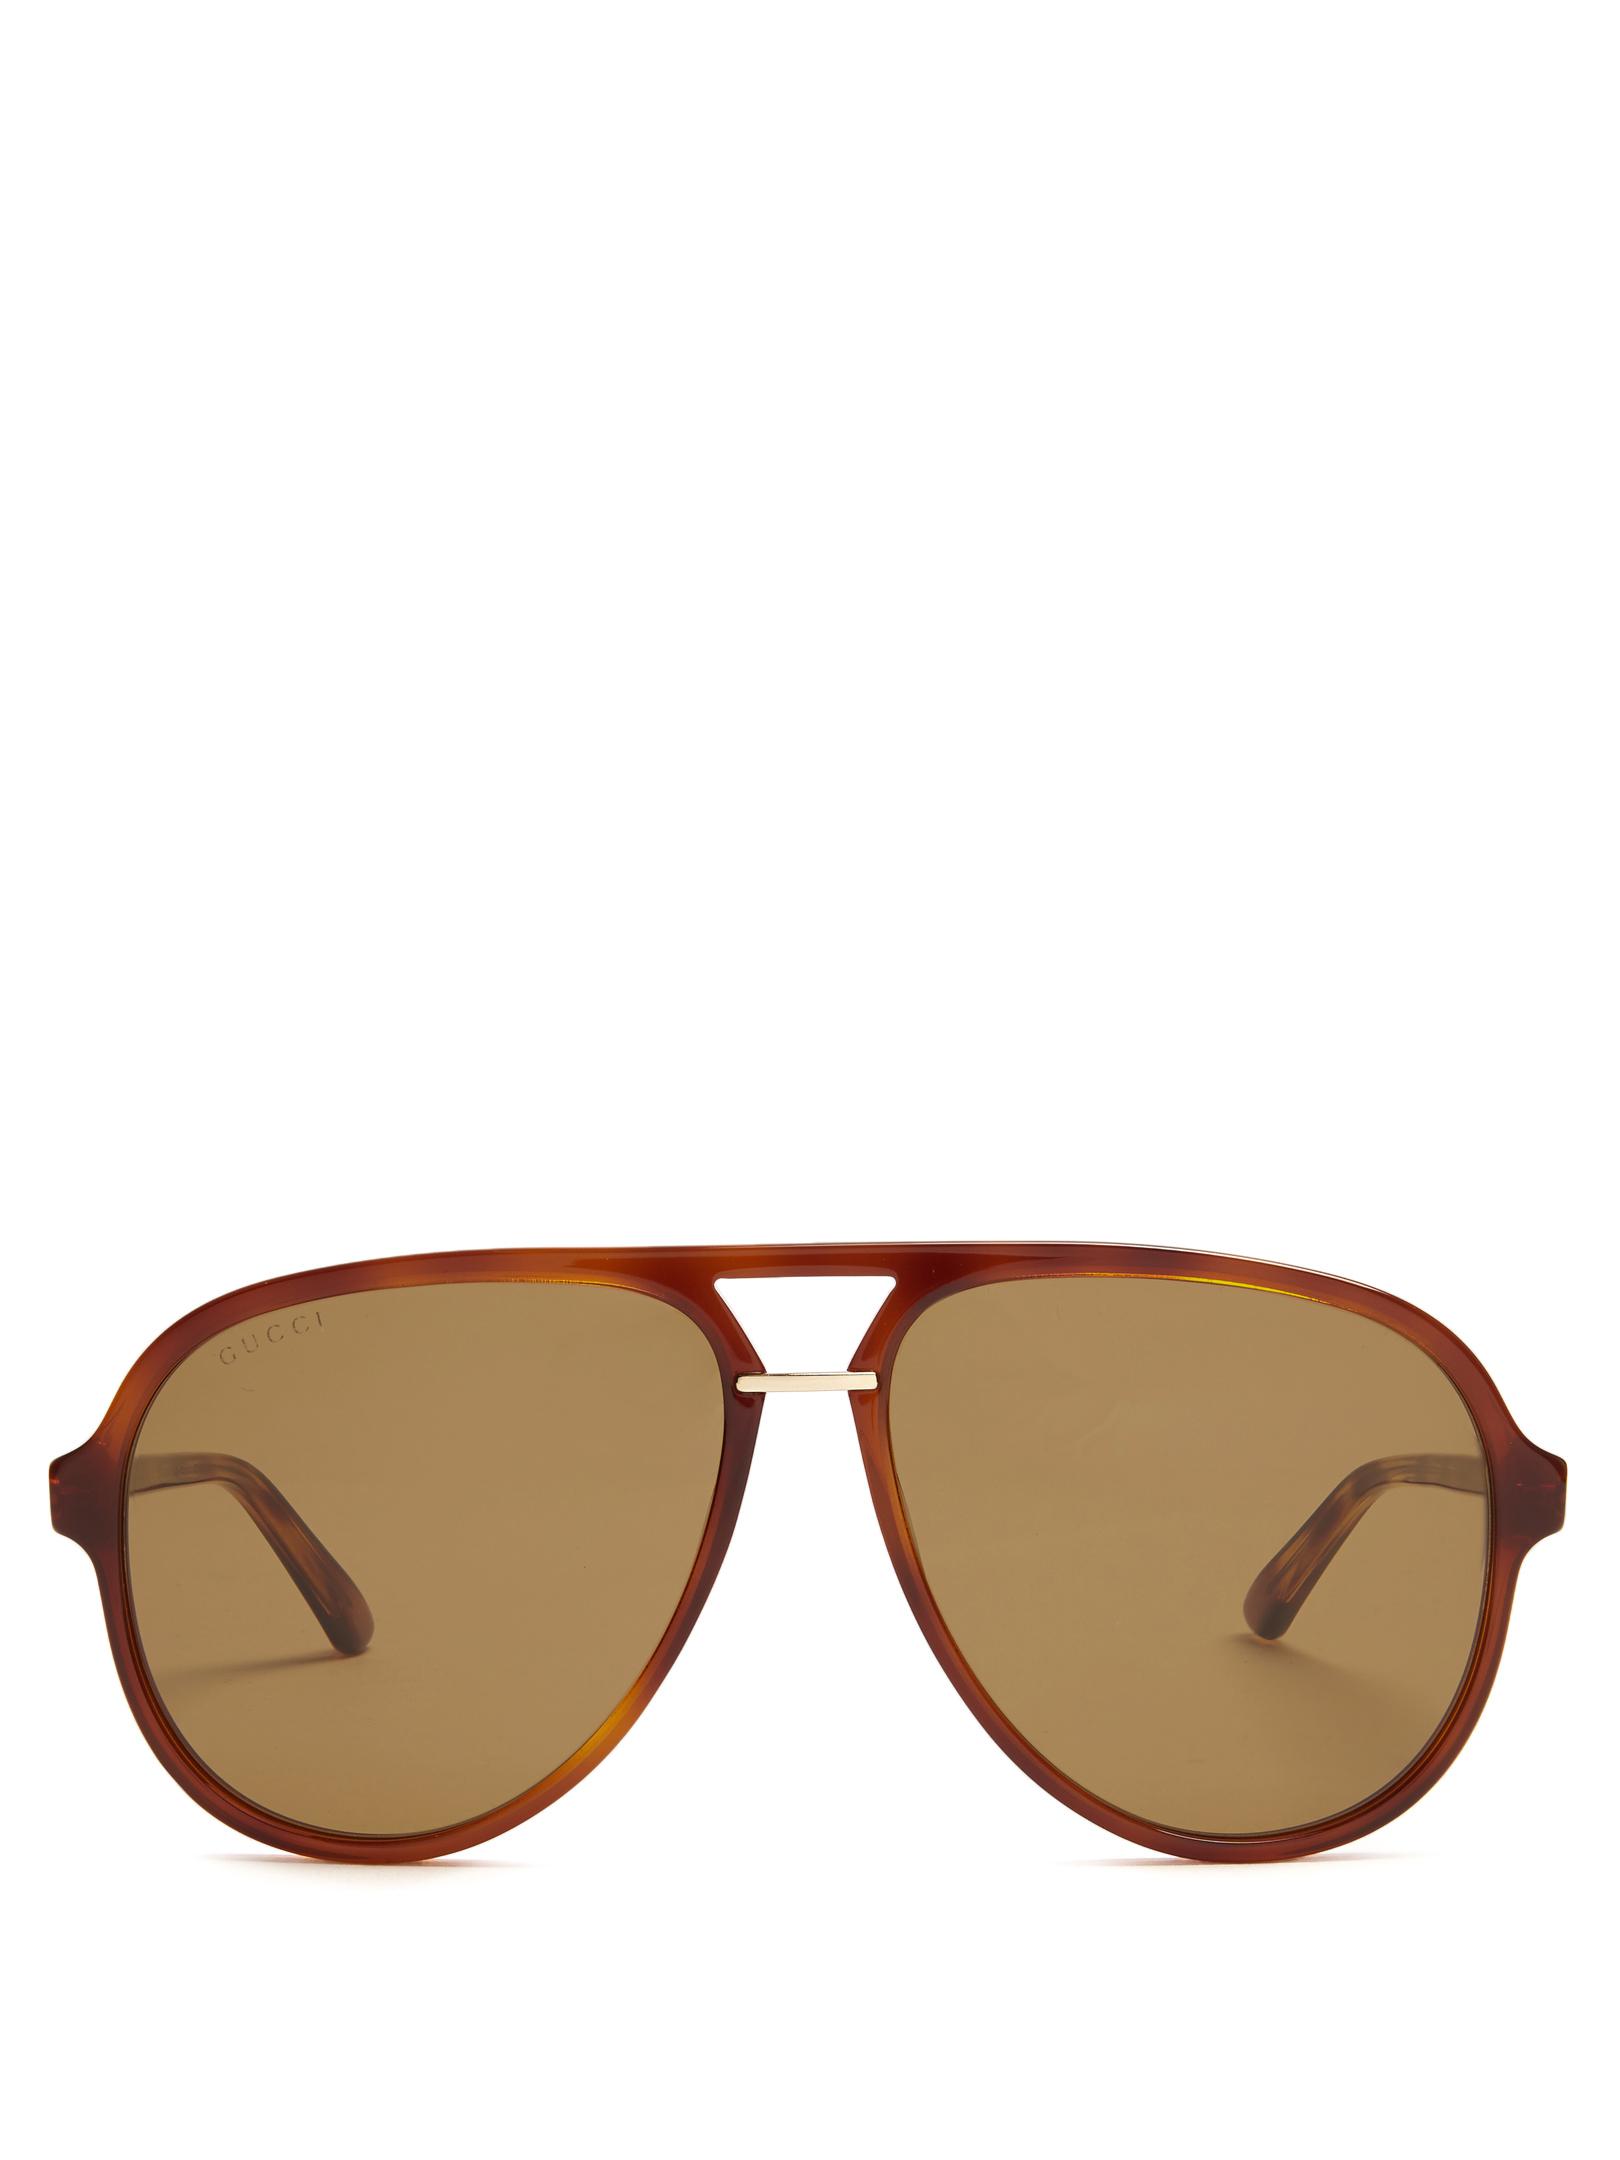 Hula Waimea Sunglasses - Tortoise/Brown on Garmentory